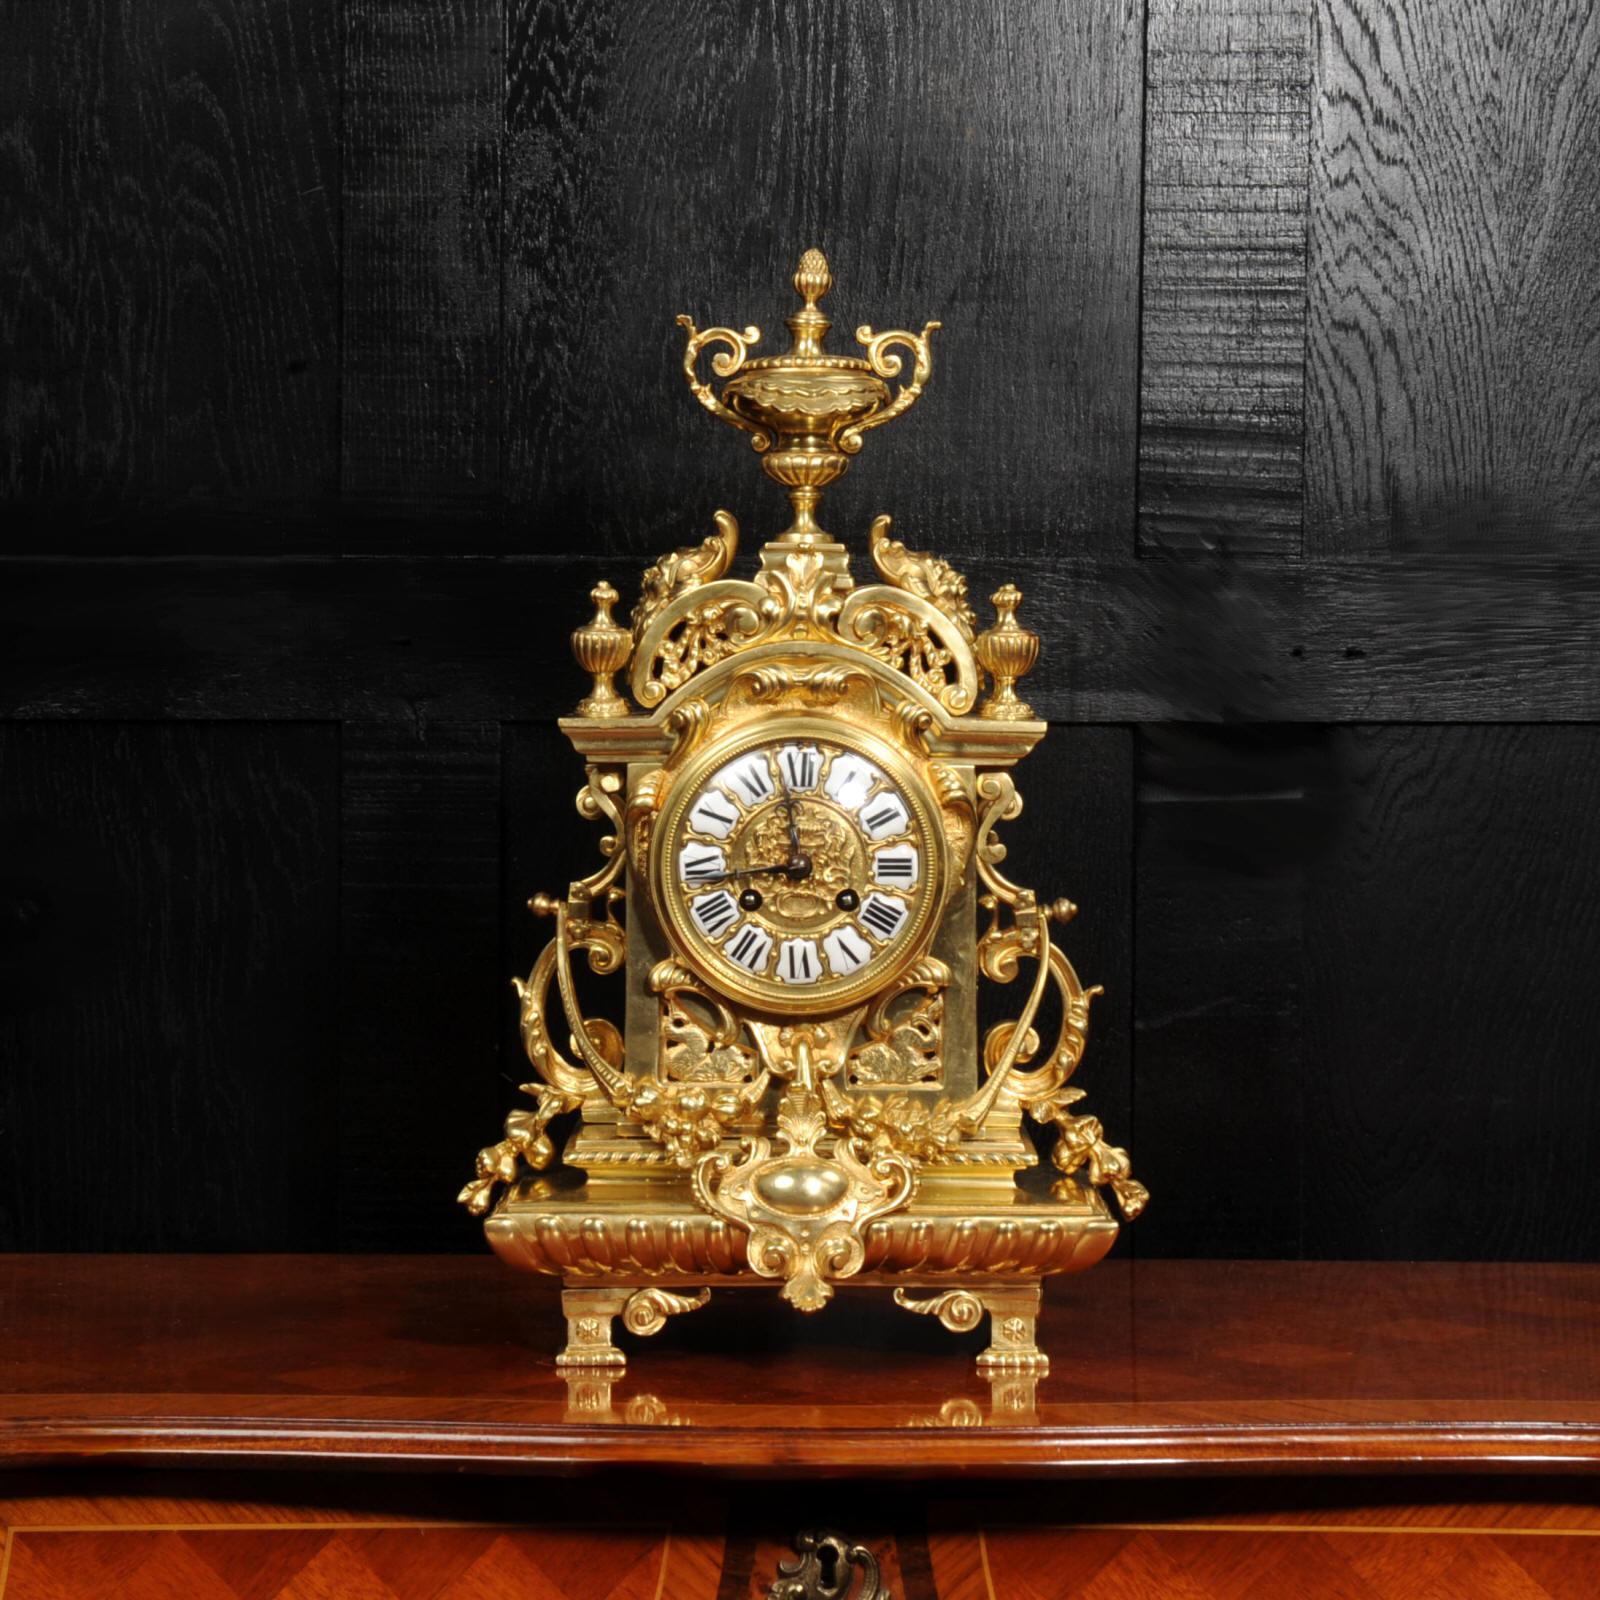 Une grande et étonnante horloge baroque française d'époque. Conçue comme une ruine romantique avec un plateau arqué orné de masques grotesques, des panneaux latéraux ajourés et reposant sur une base à coussin godronnée. Les côtés sont ornés de